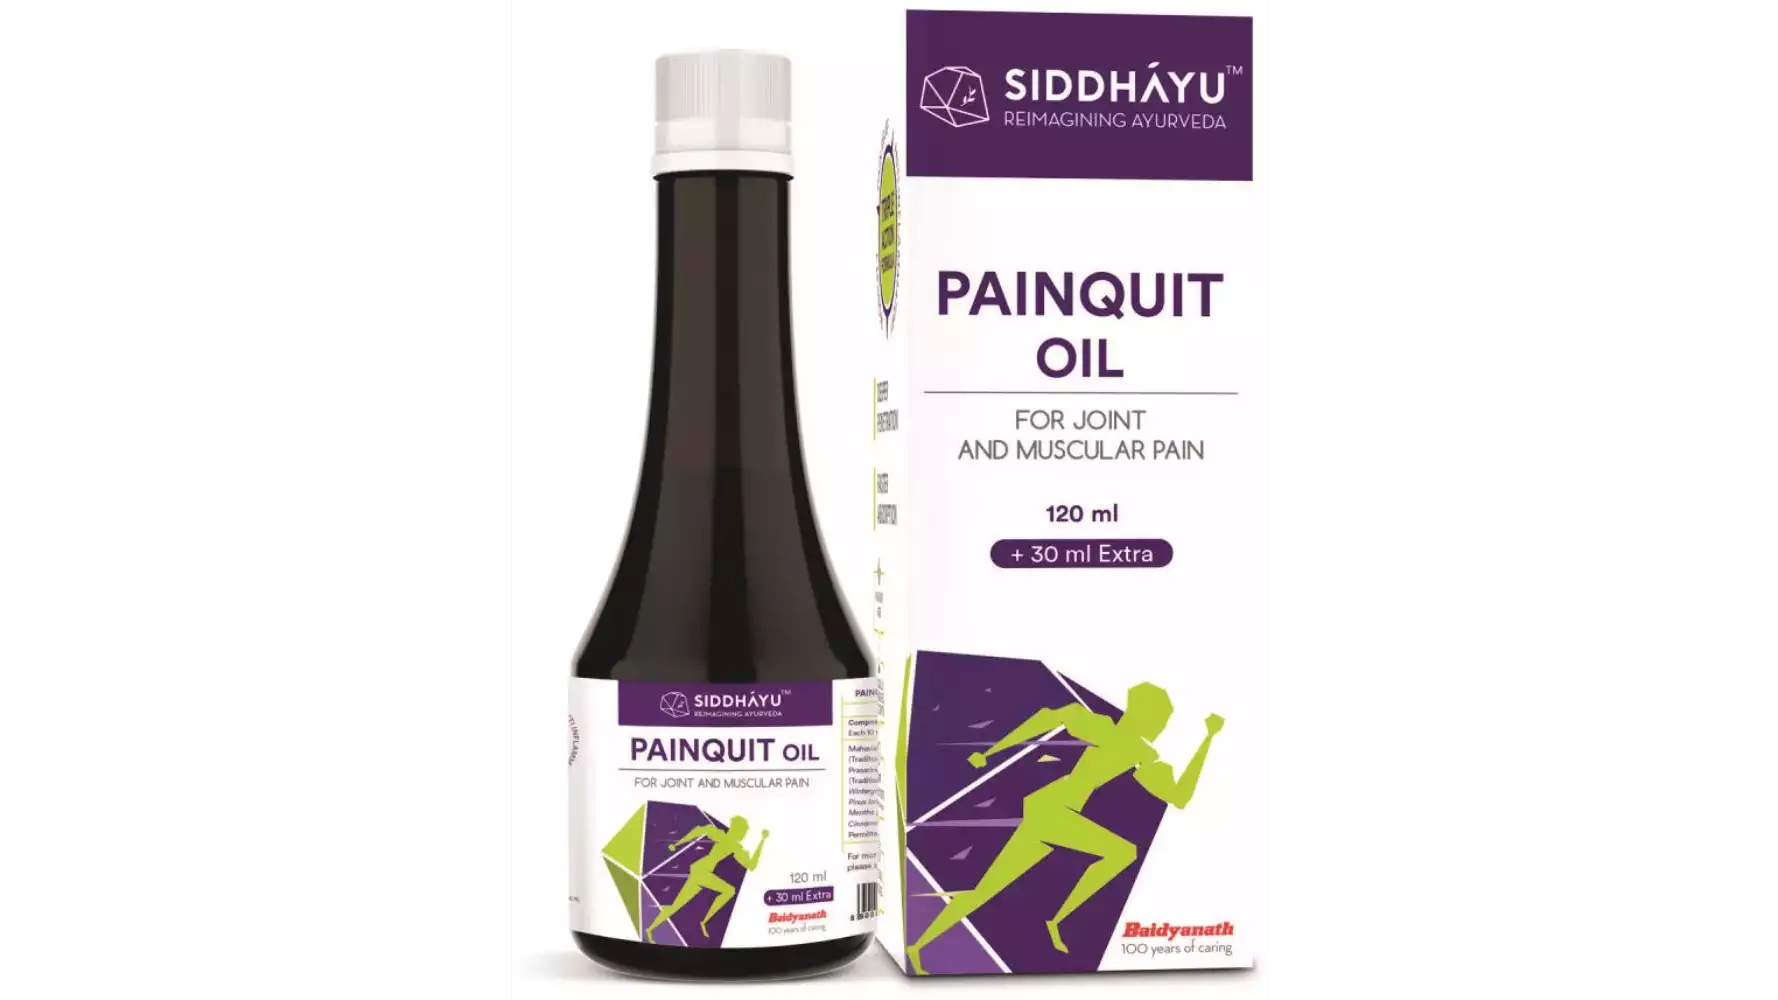 Siddhayu Painquit Oil (120ml)